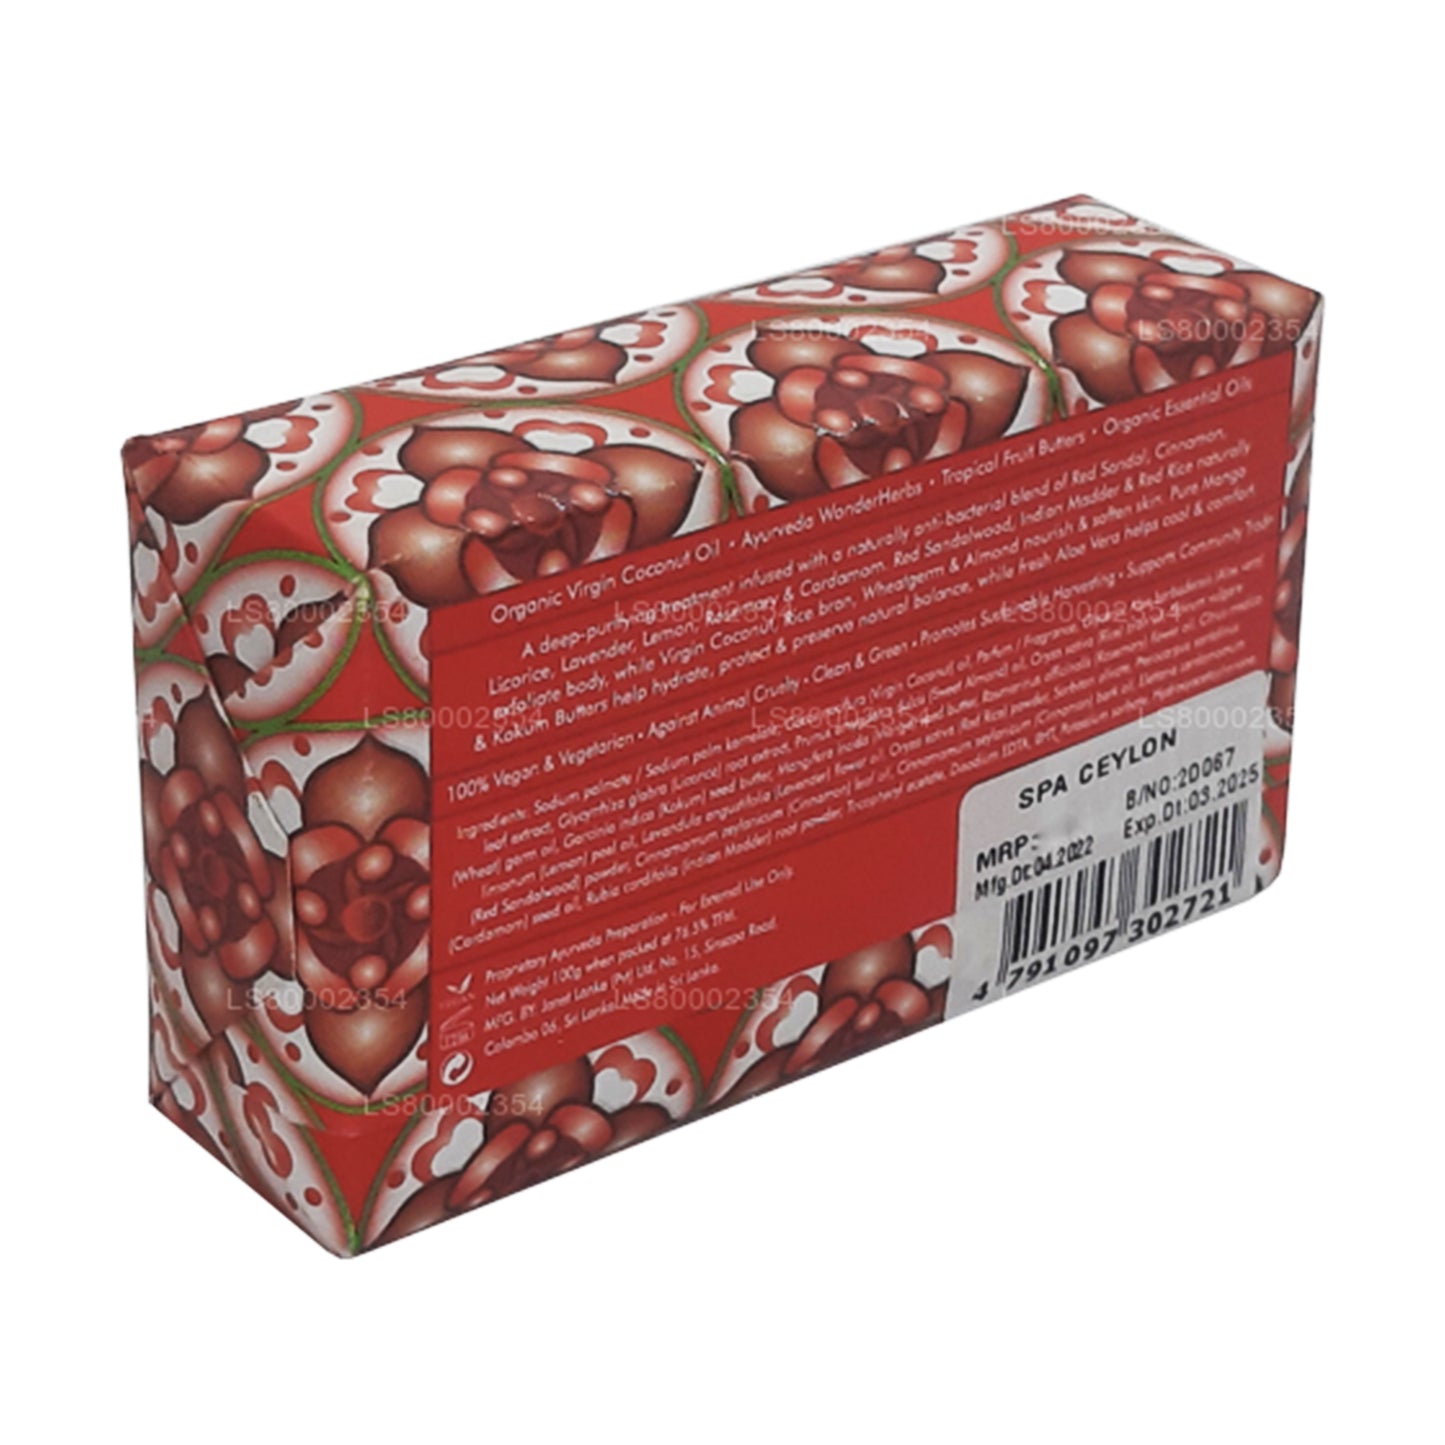 Spa Ceylon rød sandal og kanel Anti-bakteriel eksfolierende wellness-sæbe (100 g)